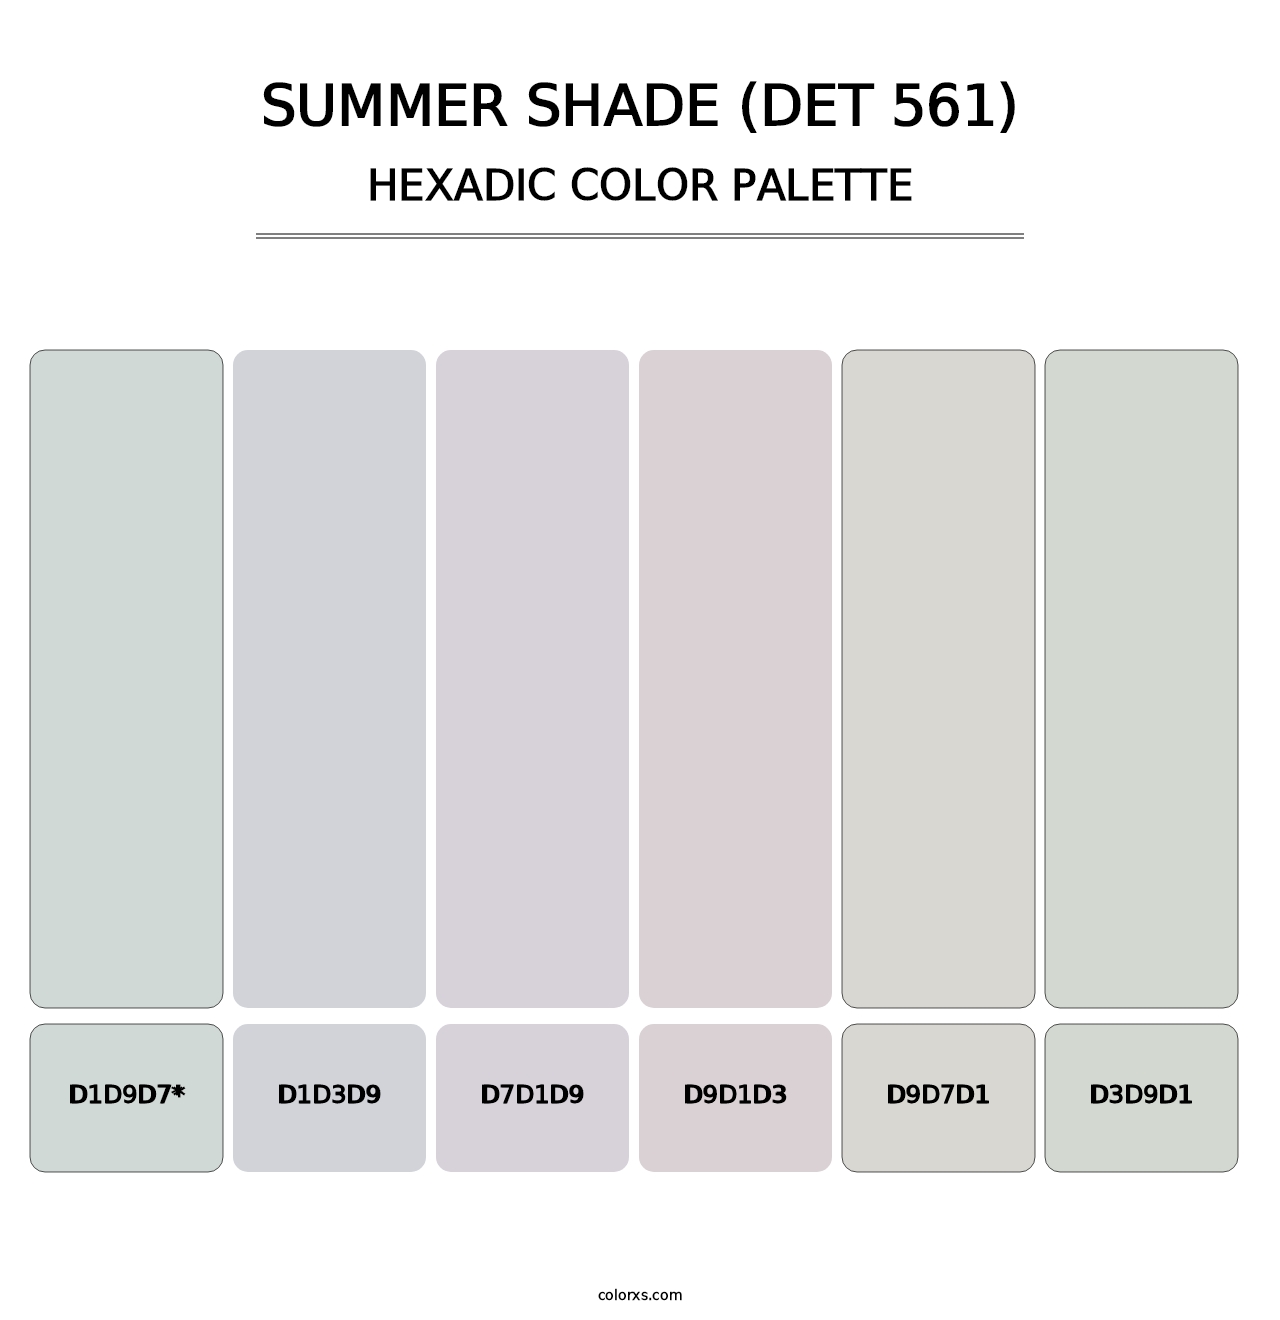 Summer Shade (DET 561) - Hexadic Color Palette